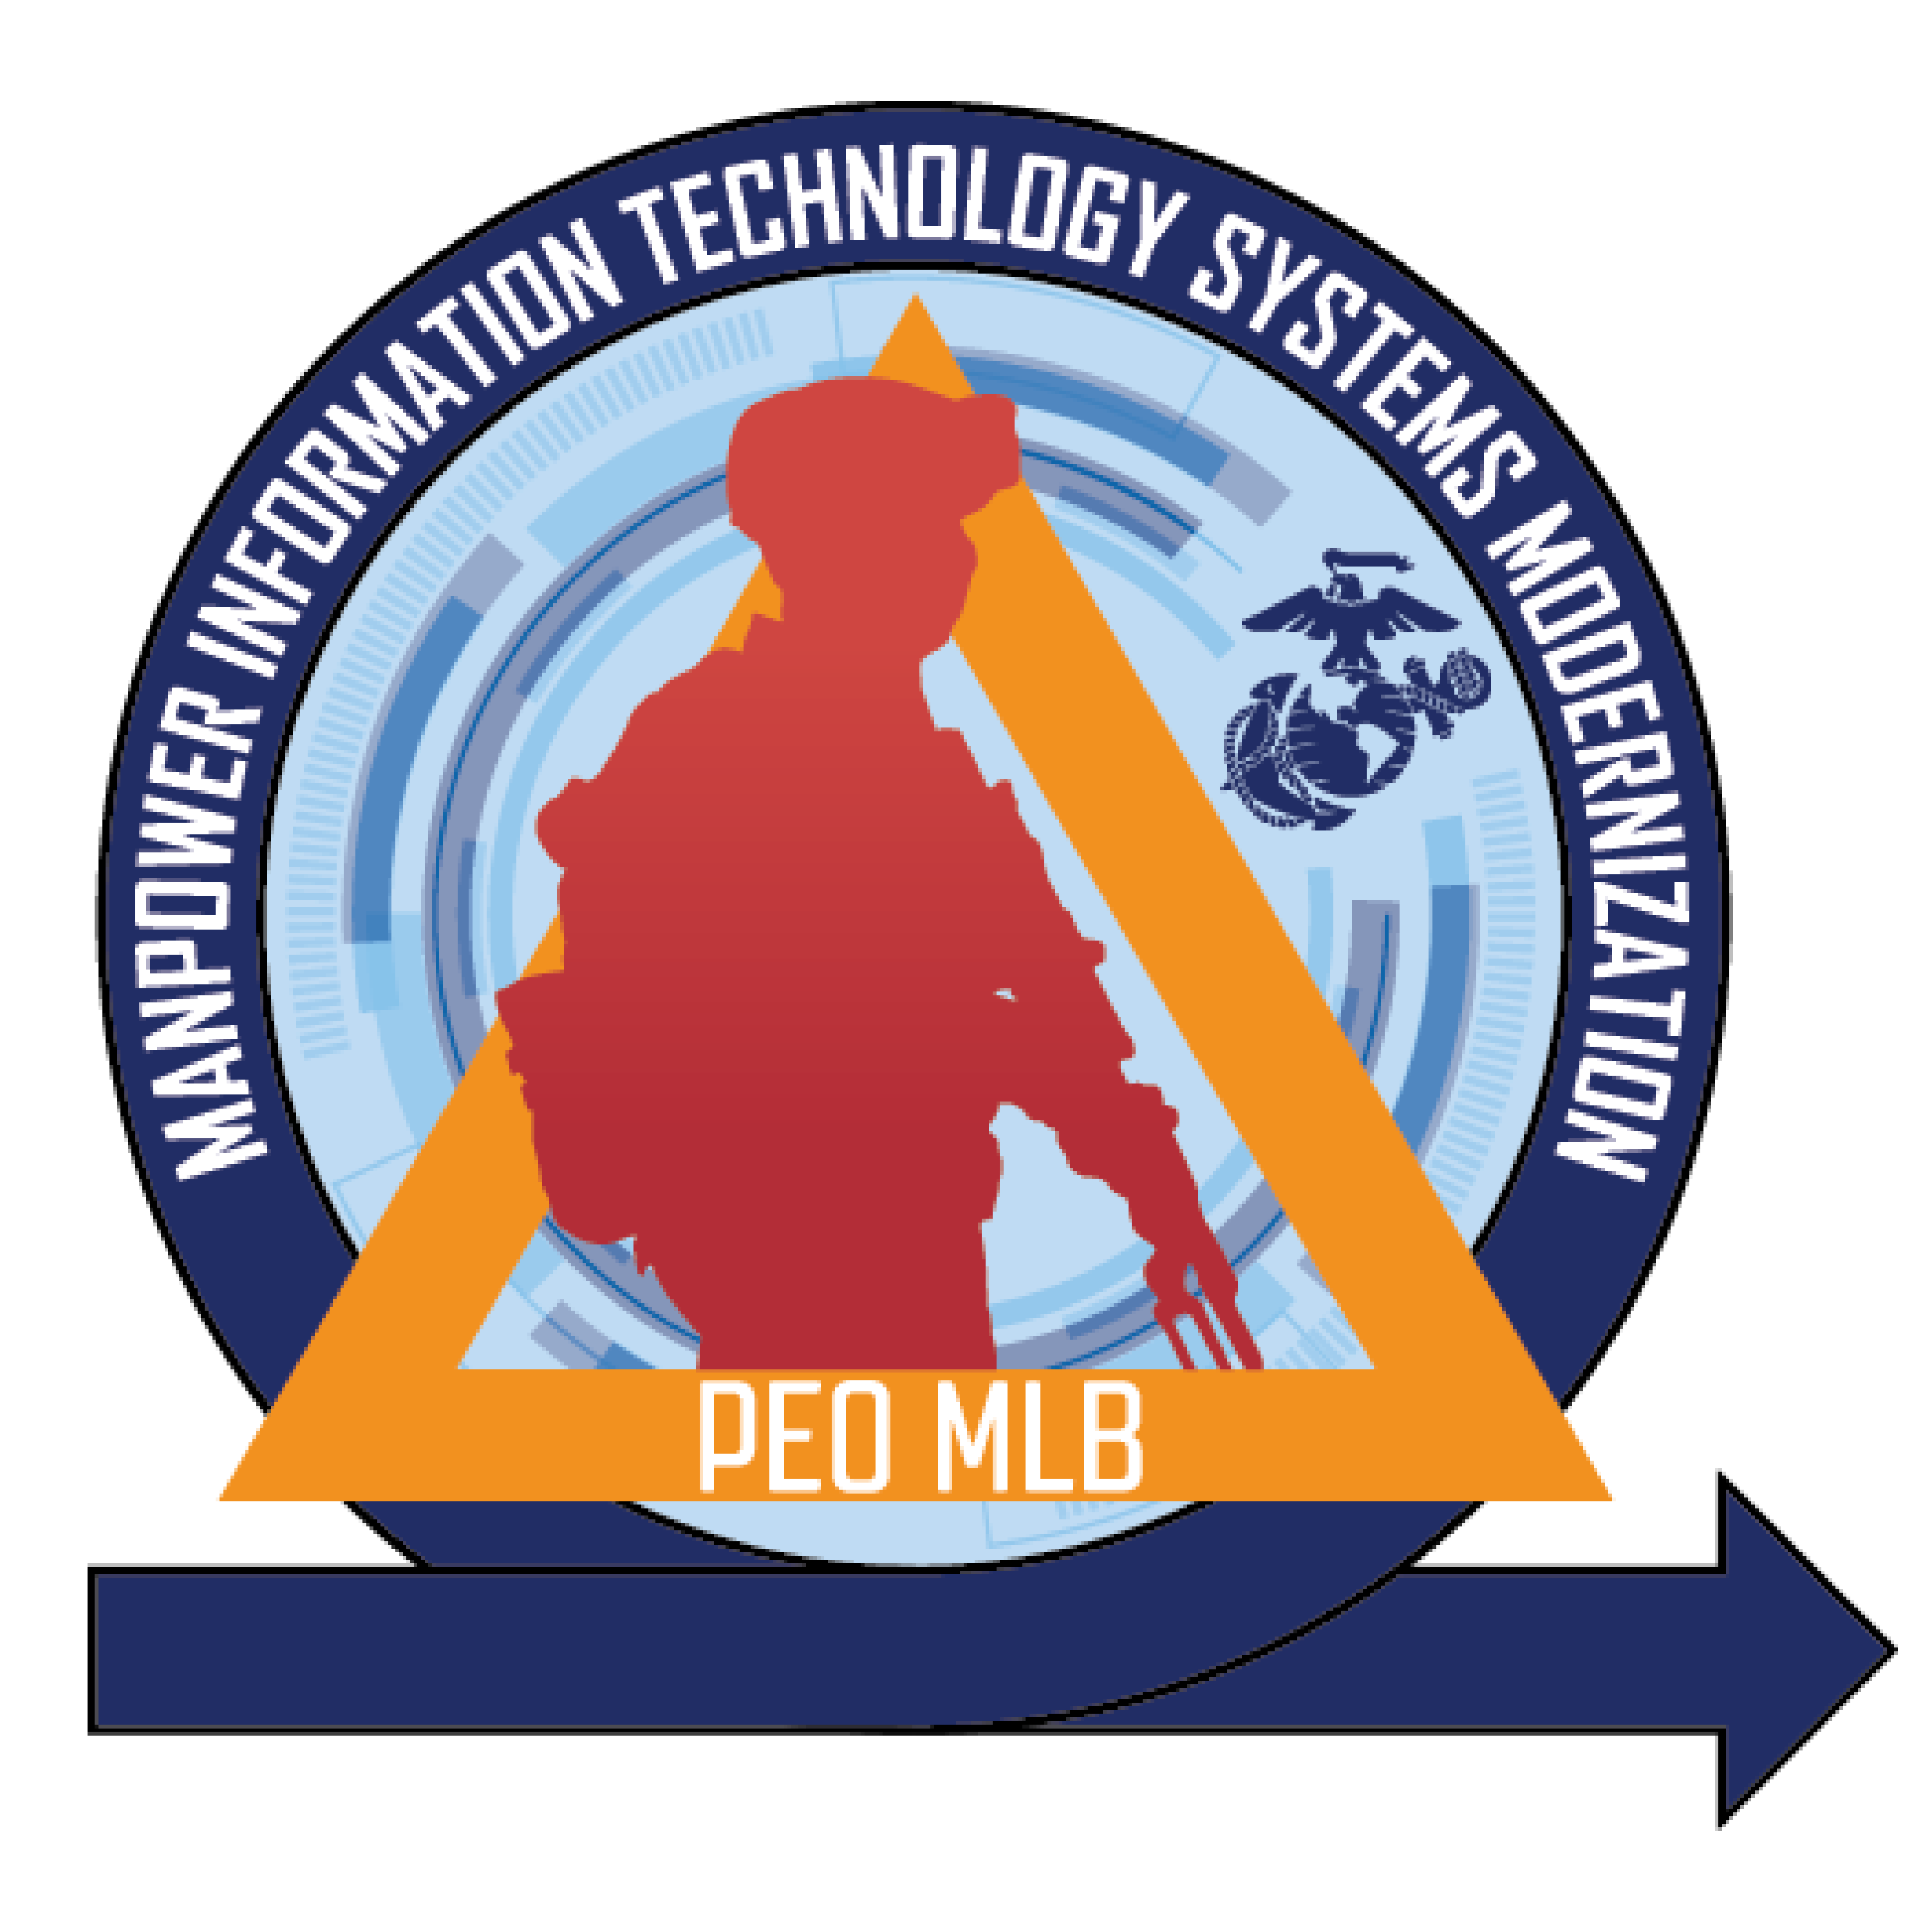 Manpower Information Technology Systems Modernization Logo